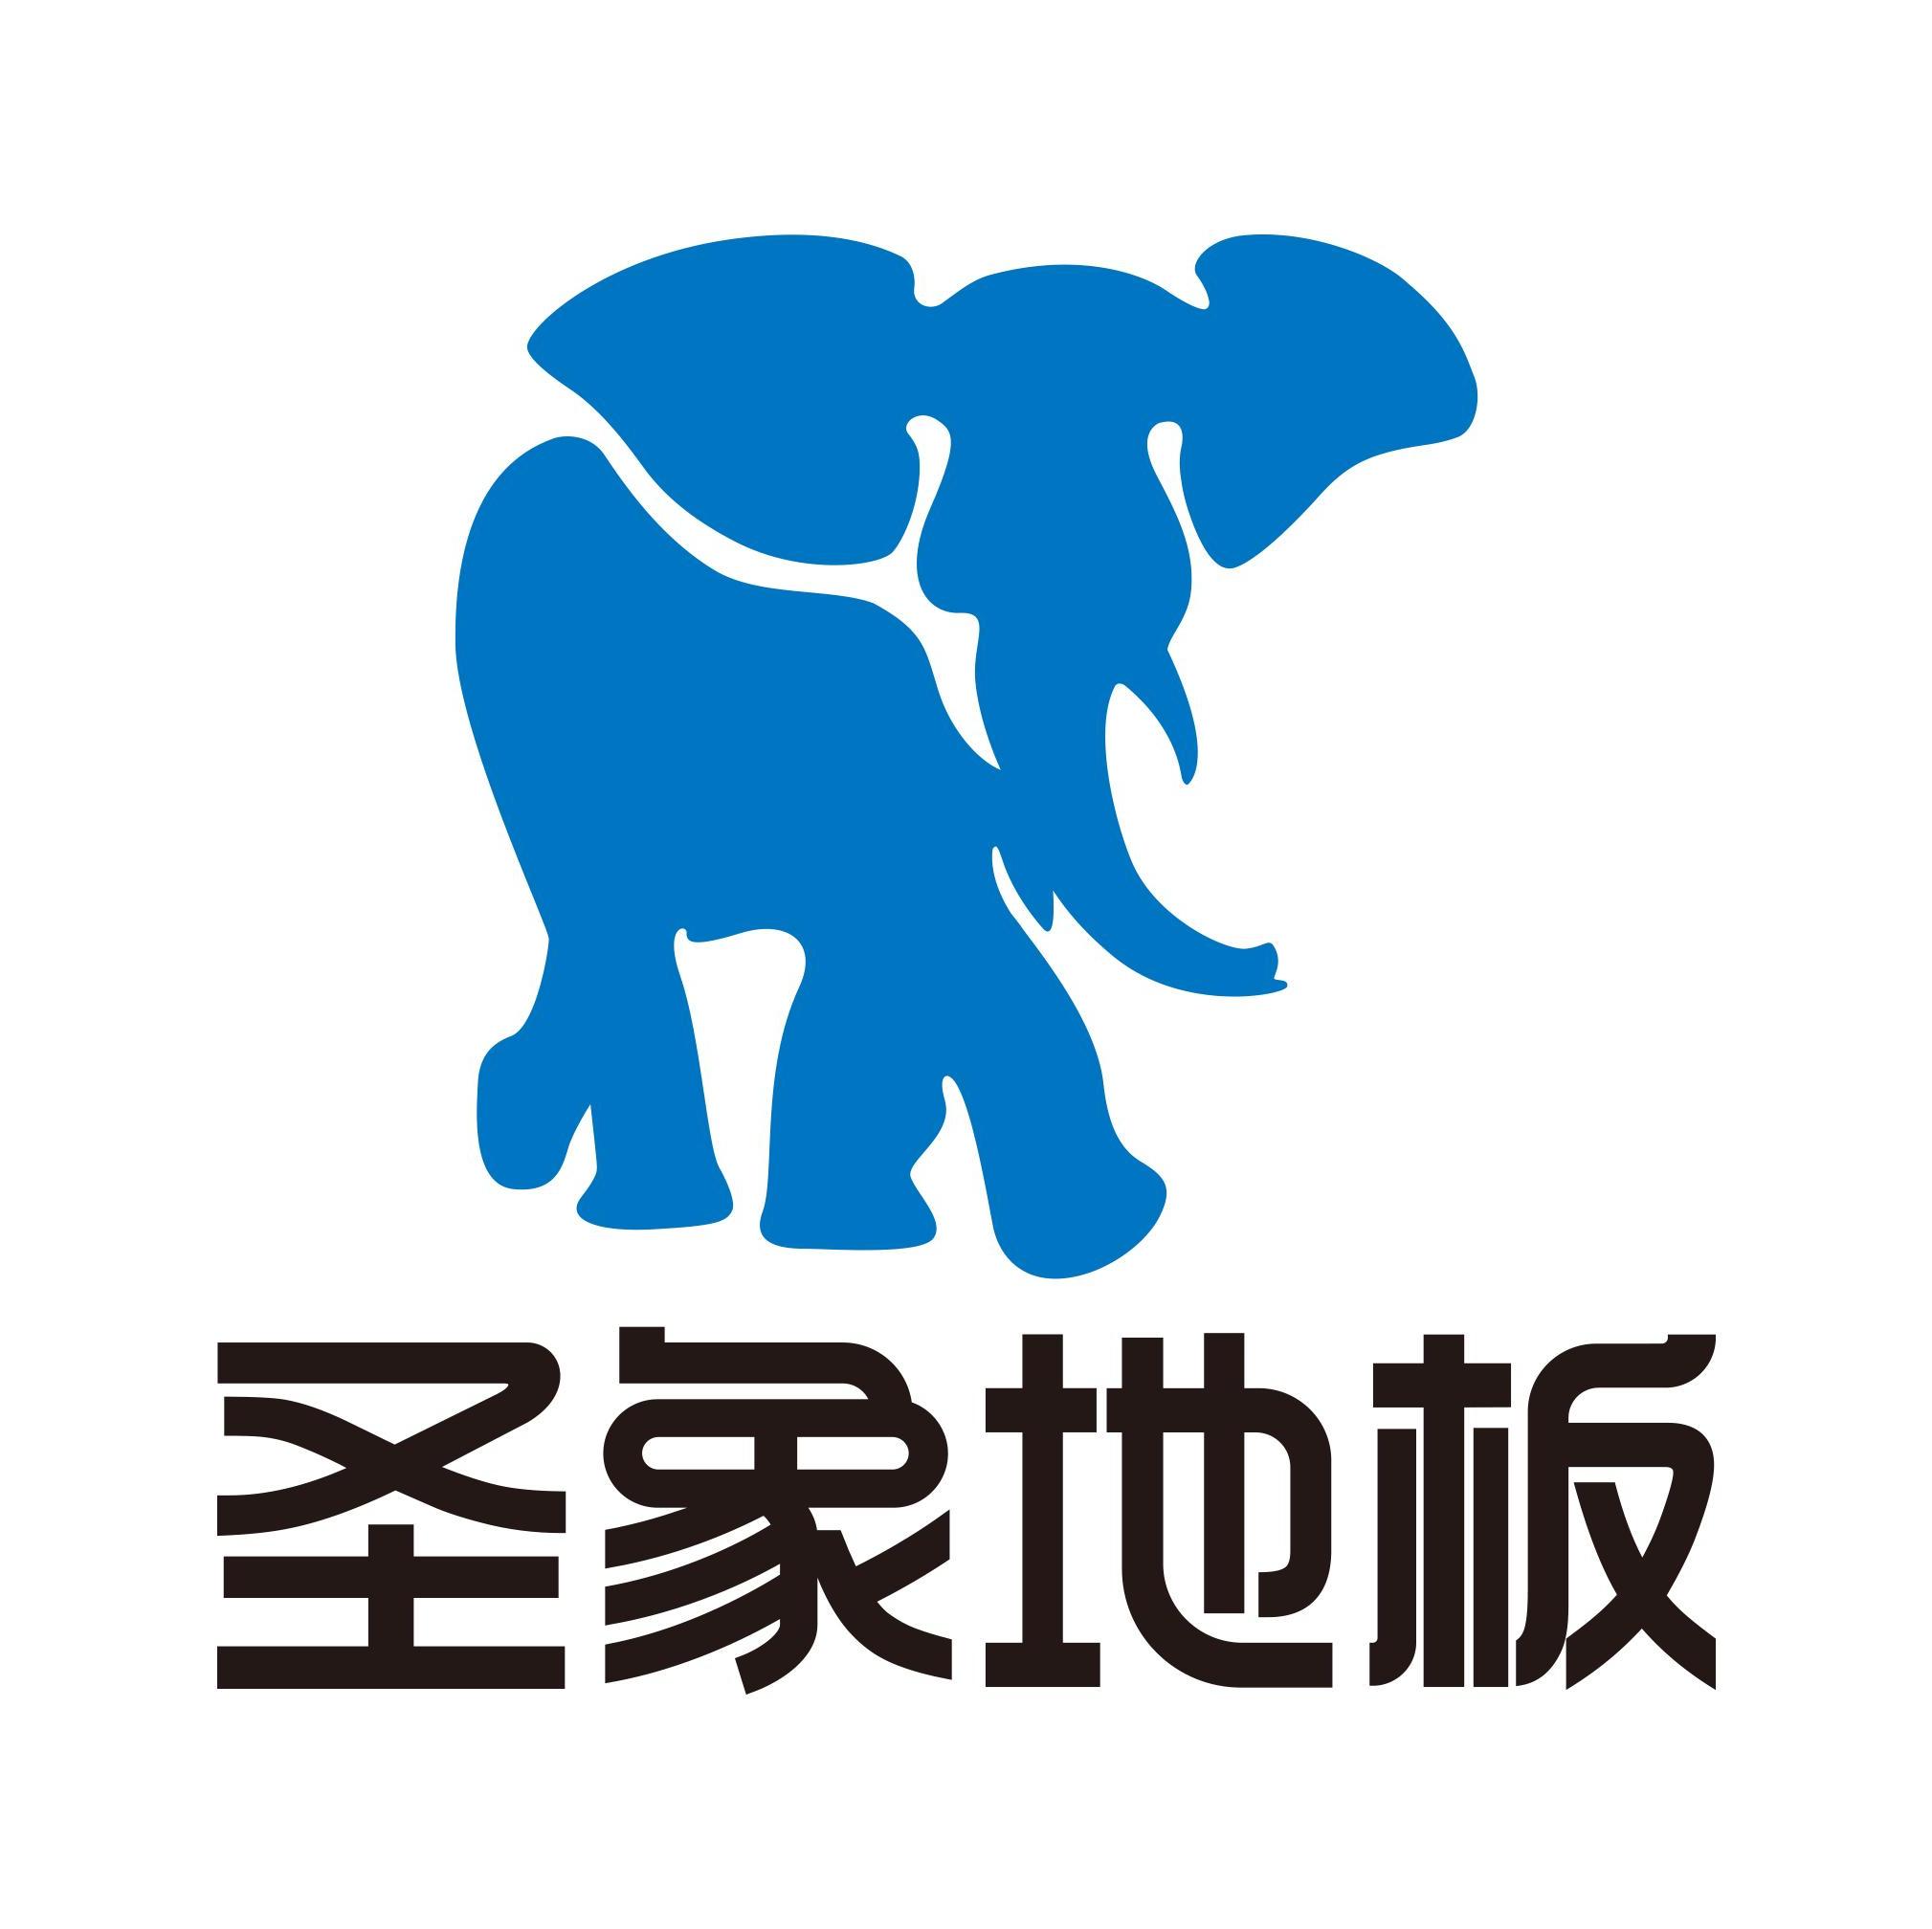 北京圣象木业有限公司丰台区丽泽桥店